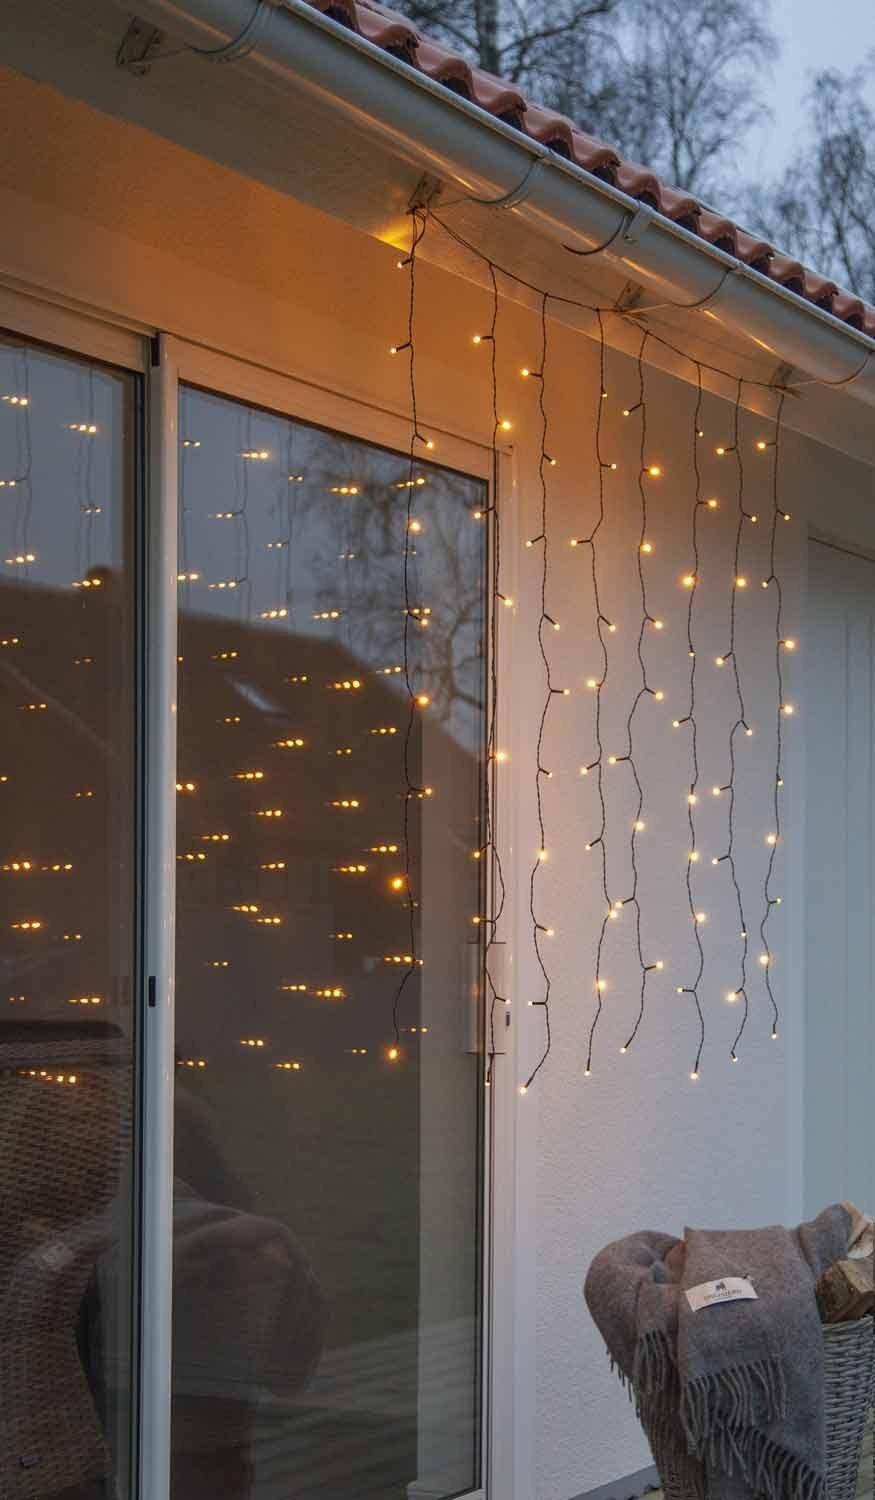 STAR TRADING LED-Lichtervorhang Golden warmwhite, 120-flammig, außen 1,3x2m  120 LEDs golden-warmweiß Kabel schwarz